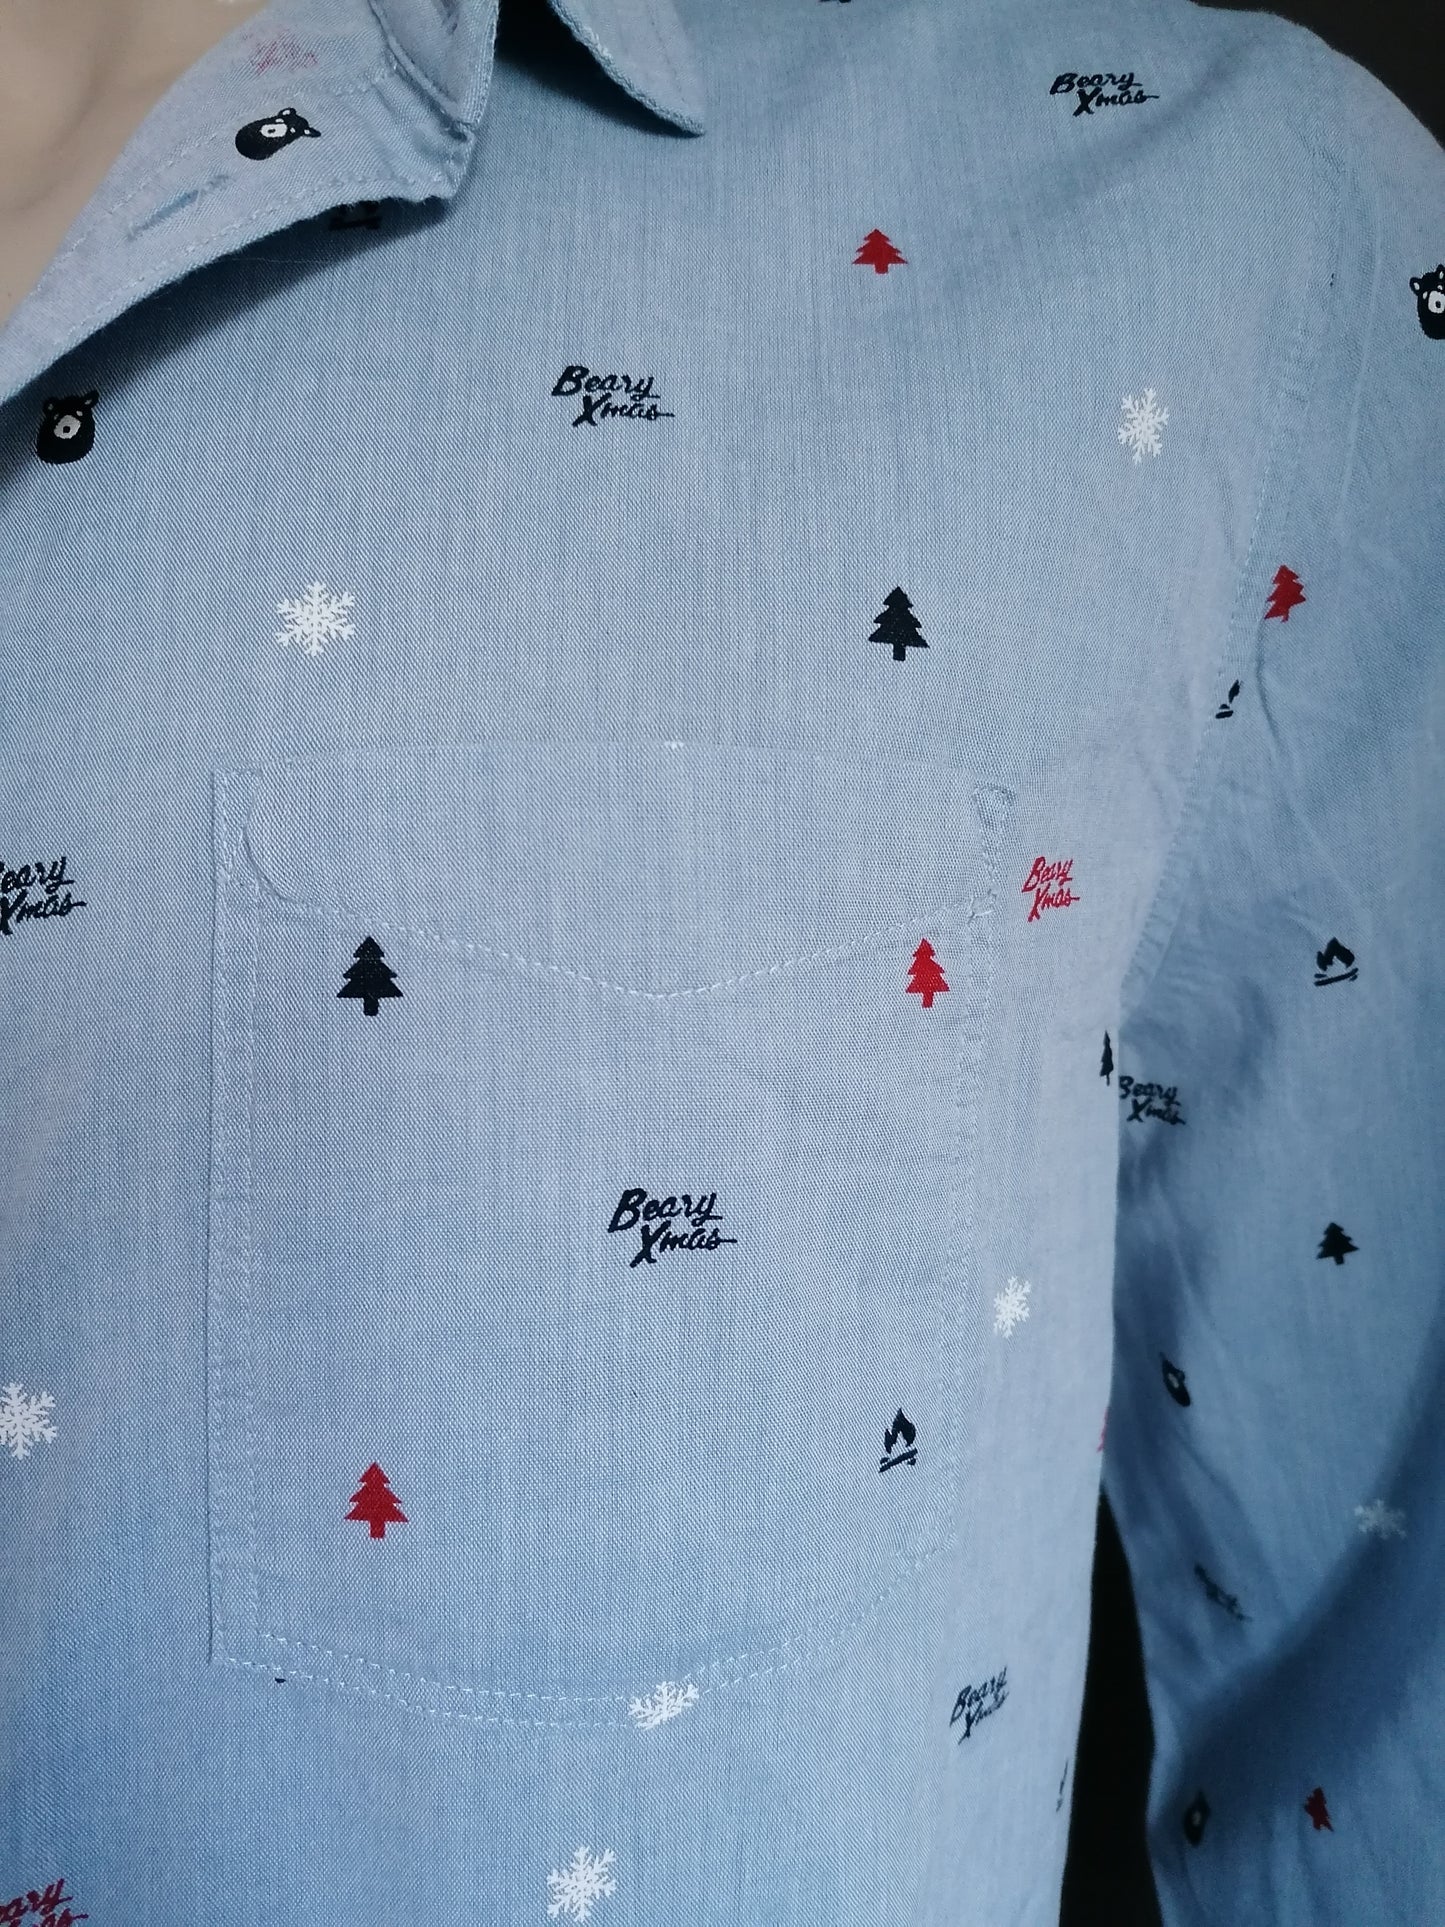 Camicia di stampa Xmas / Christmas / Beary Xmas. Azzurro. Dimensione XL.